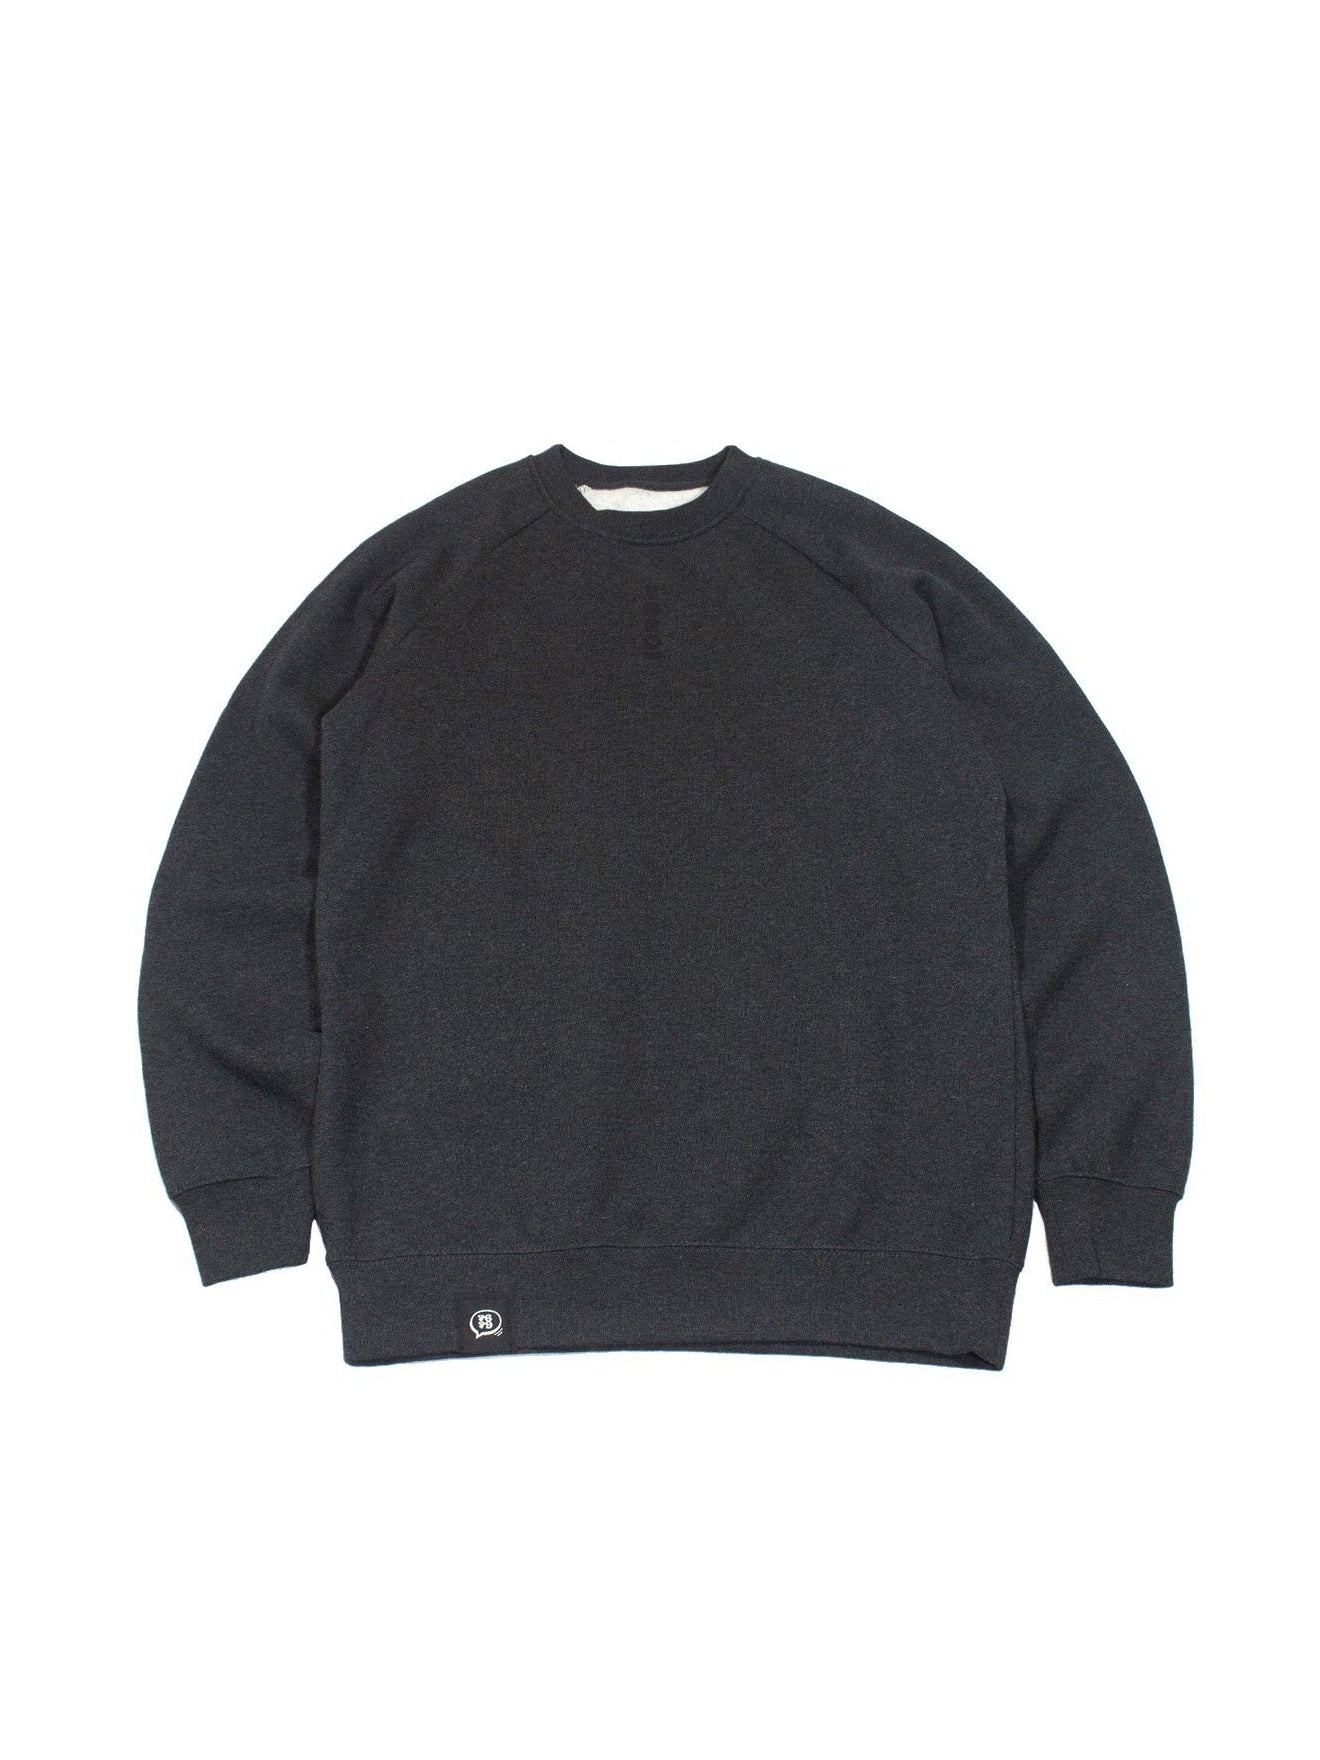 Cotton Raglan Sweatshirt - Camo Crest in Dark Heather